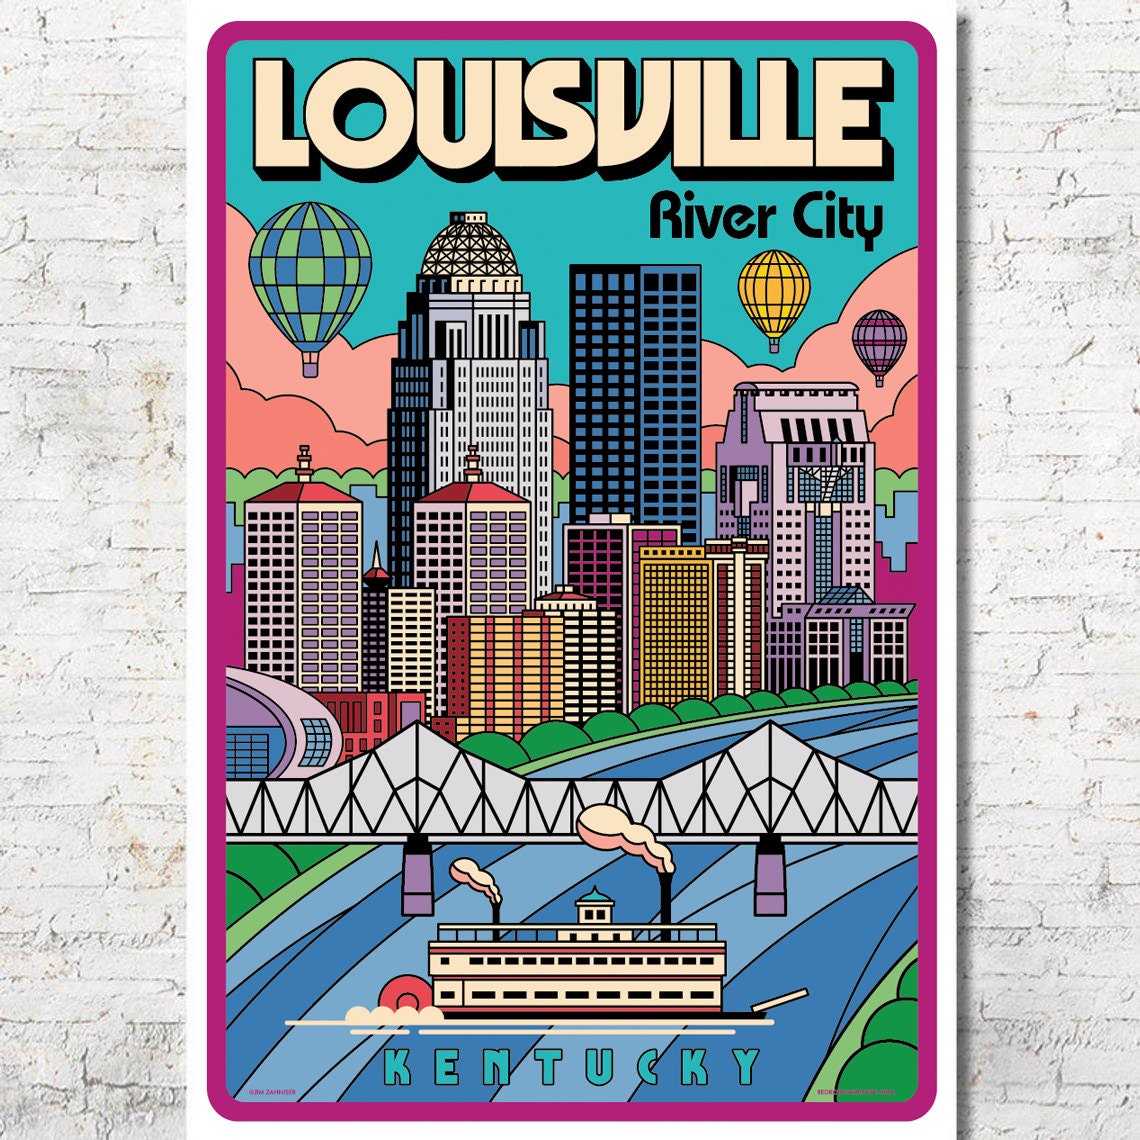 Louisville skyline art print, Kentucky poster, canvas – Loose Petals